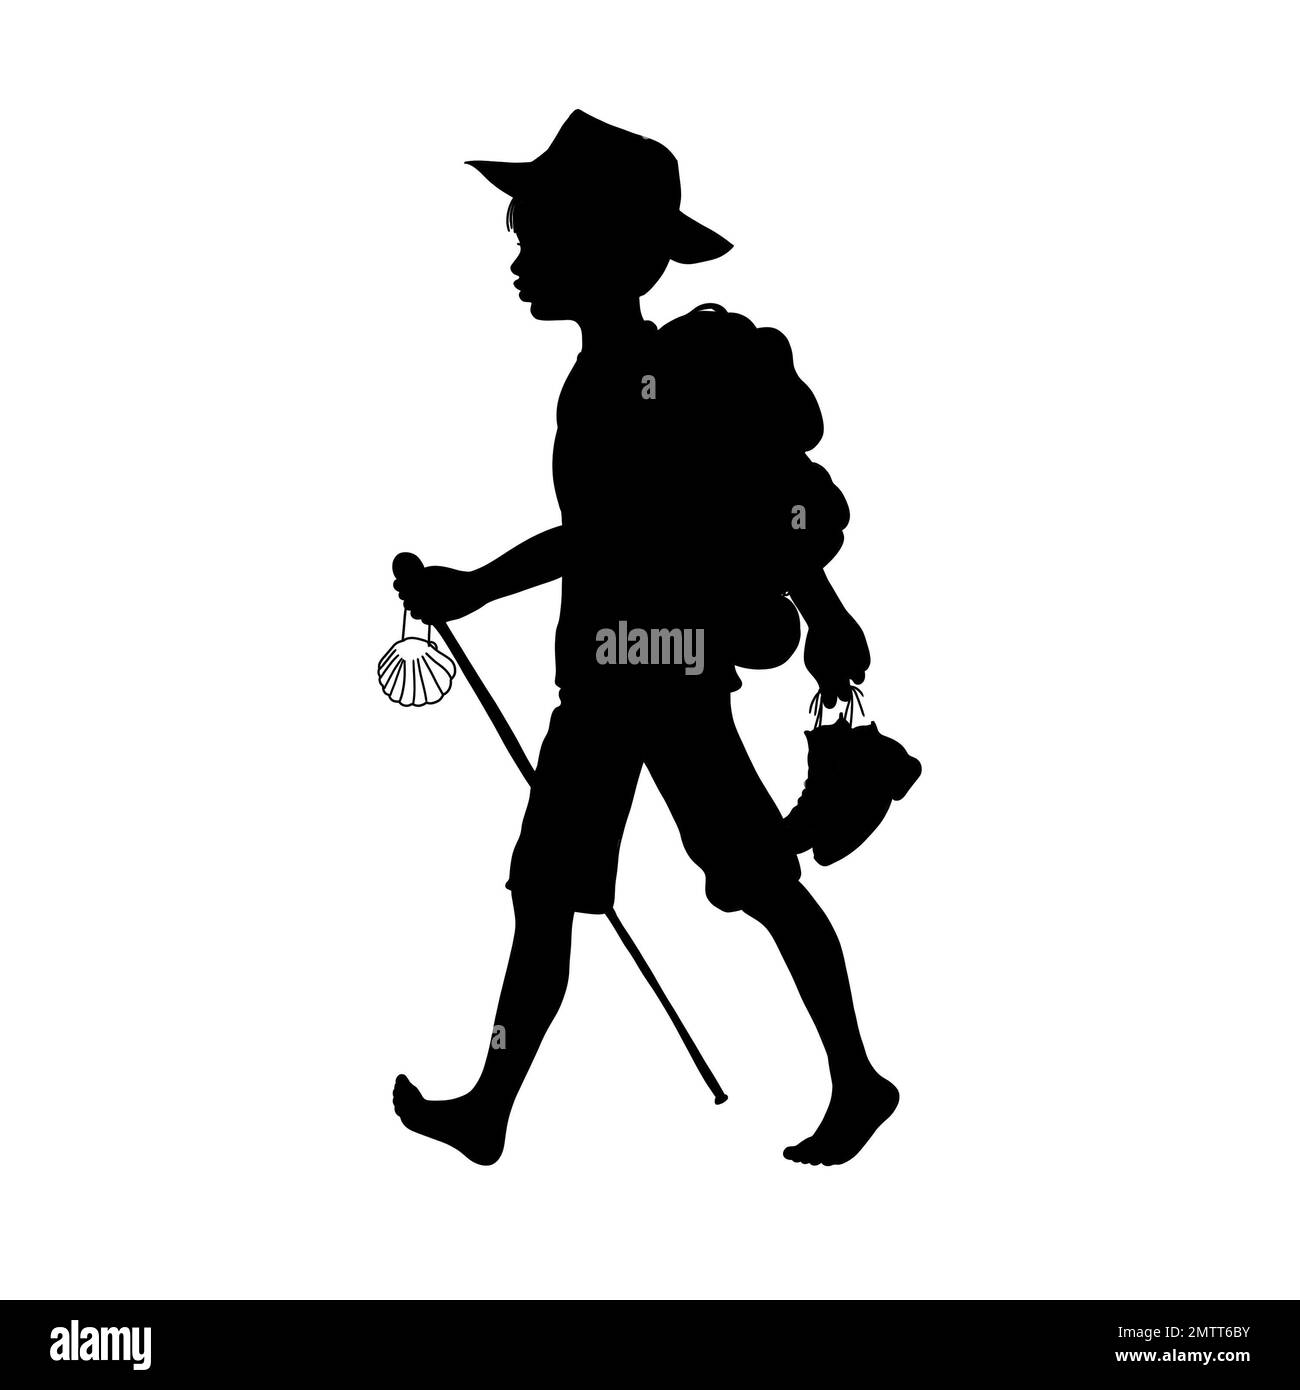 Silueta: Un niño o peregrino camina descalzo con una mochila en la espalda, sombrero y zapatos en mano con un bastón para caminar y una concha de vieira en este Foto de stock